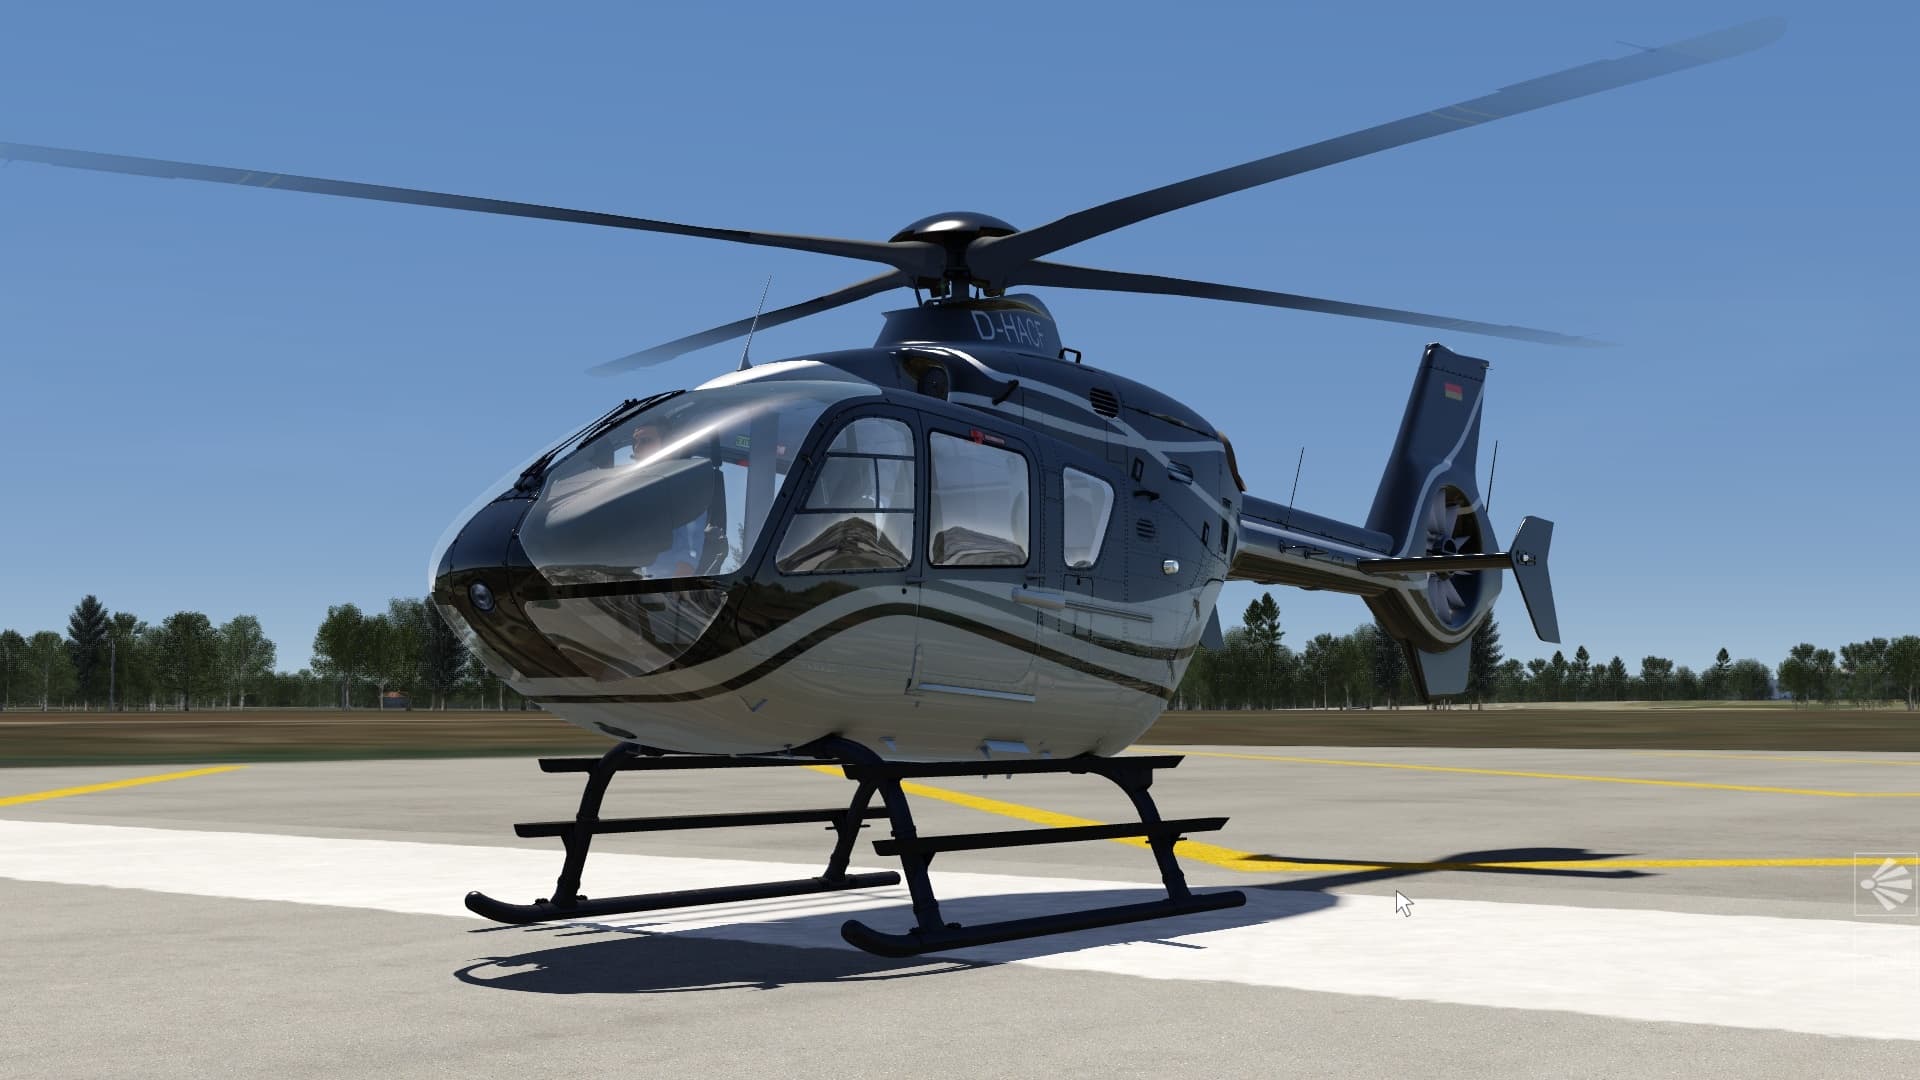 (ユーロコプターEC135はAerofly FS 4に収録されている2機のヘリコプターのうちの1機です。)